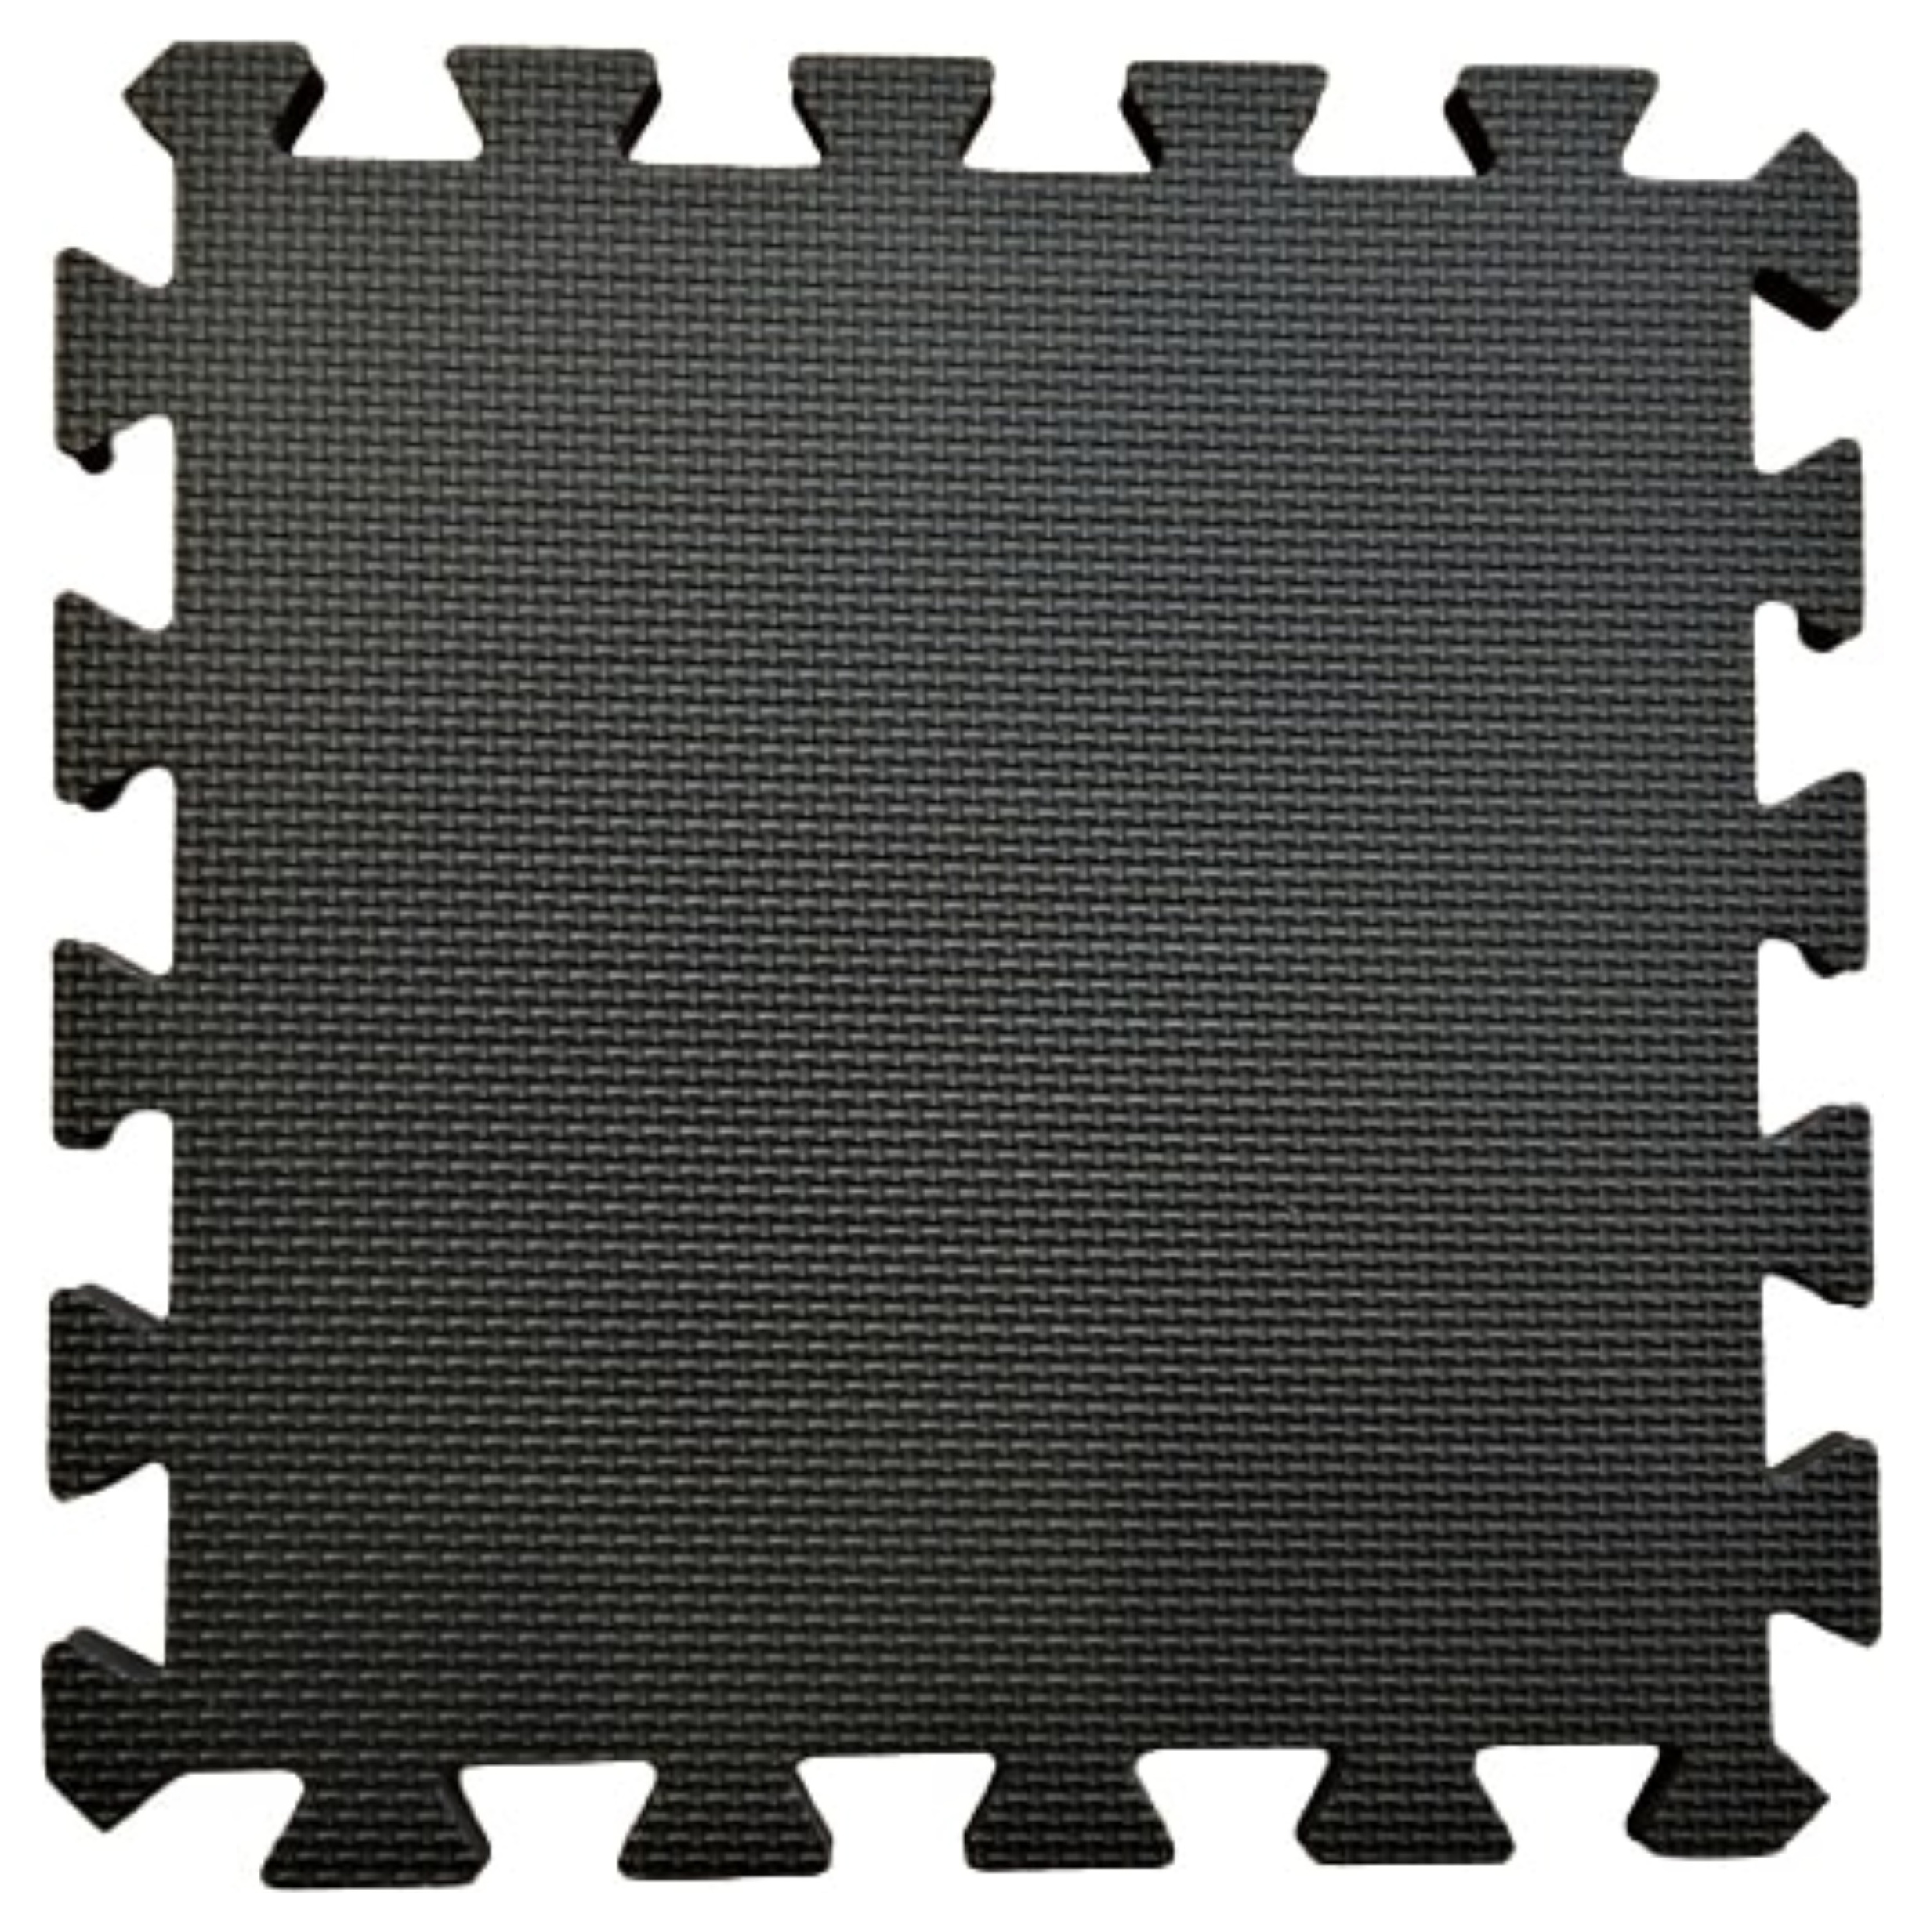 Warm Floor Black Interlocking Floor Tiles for Garden Buildings - 4 x 6ft & 3 x 8ft